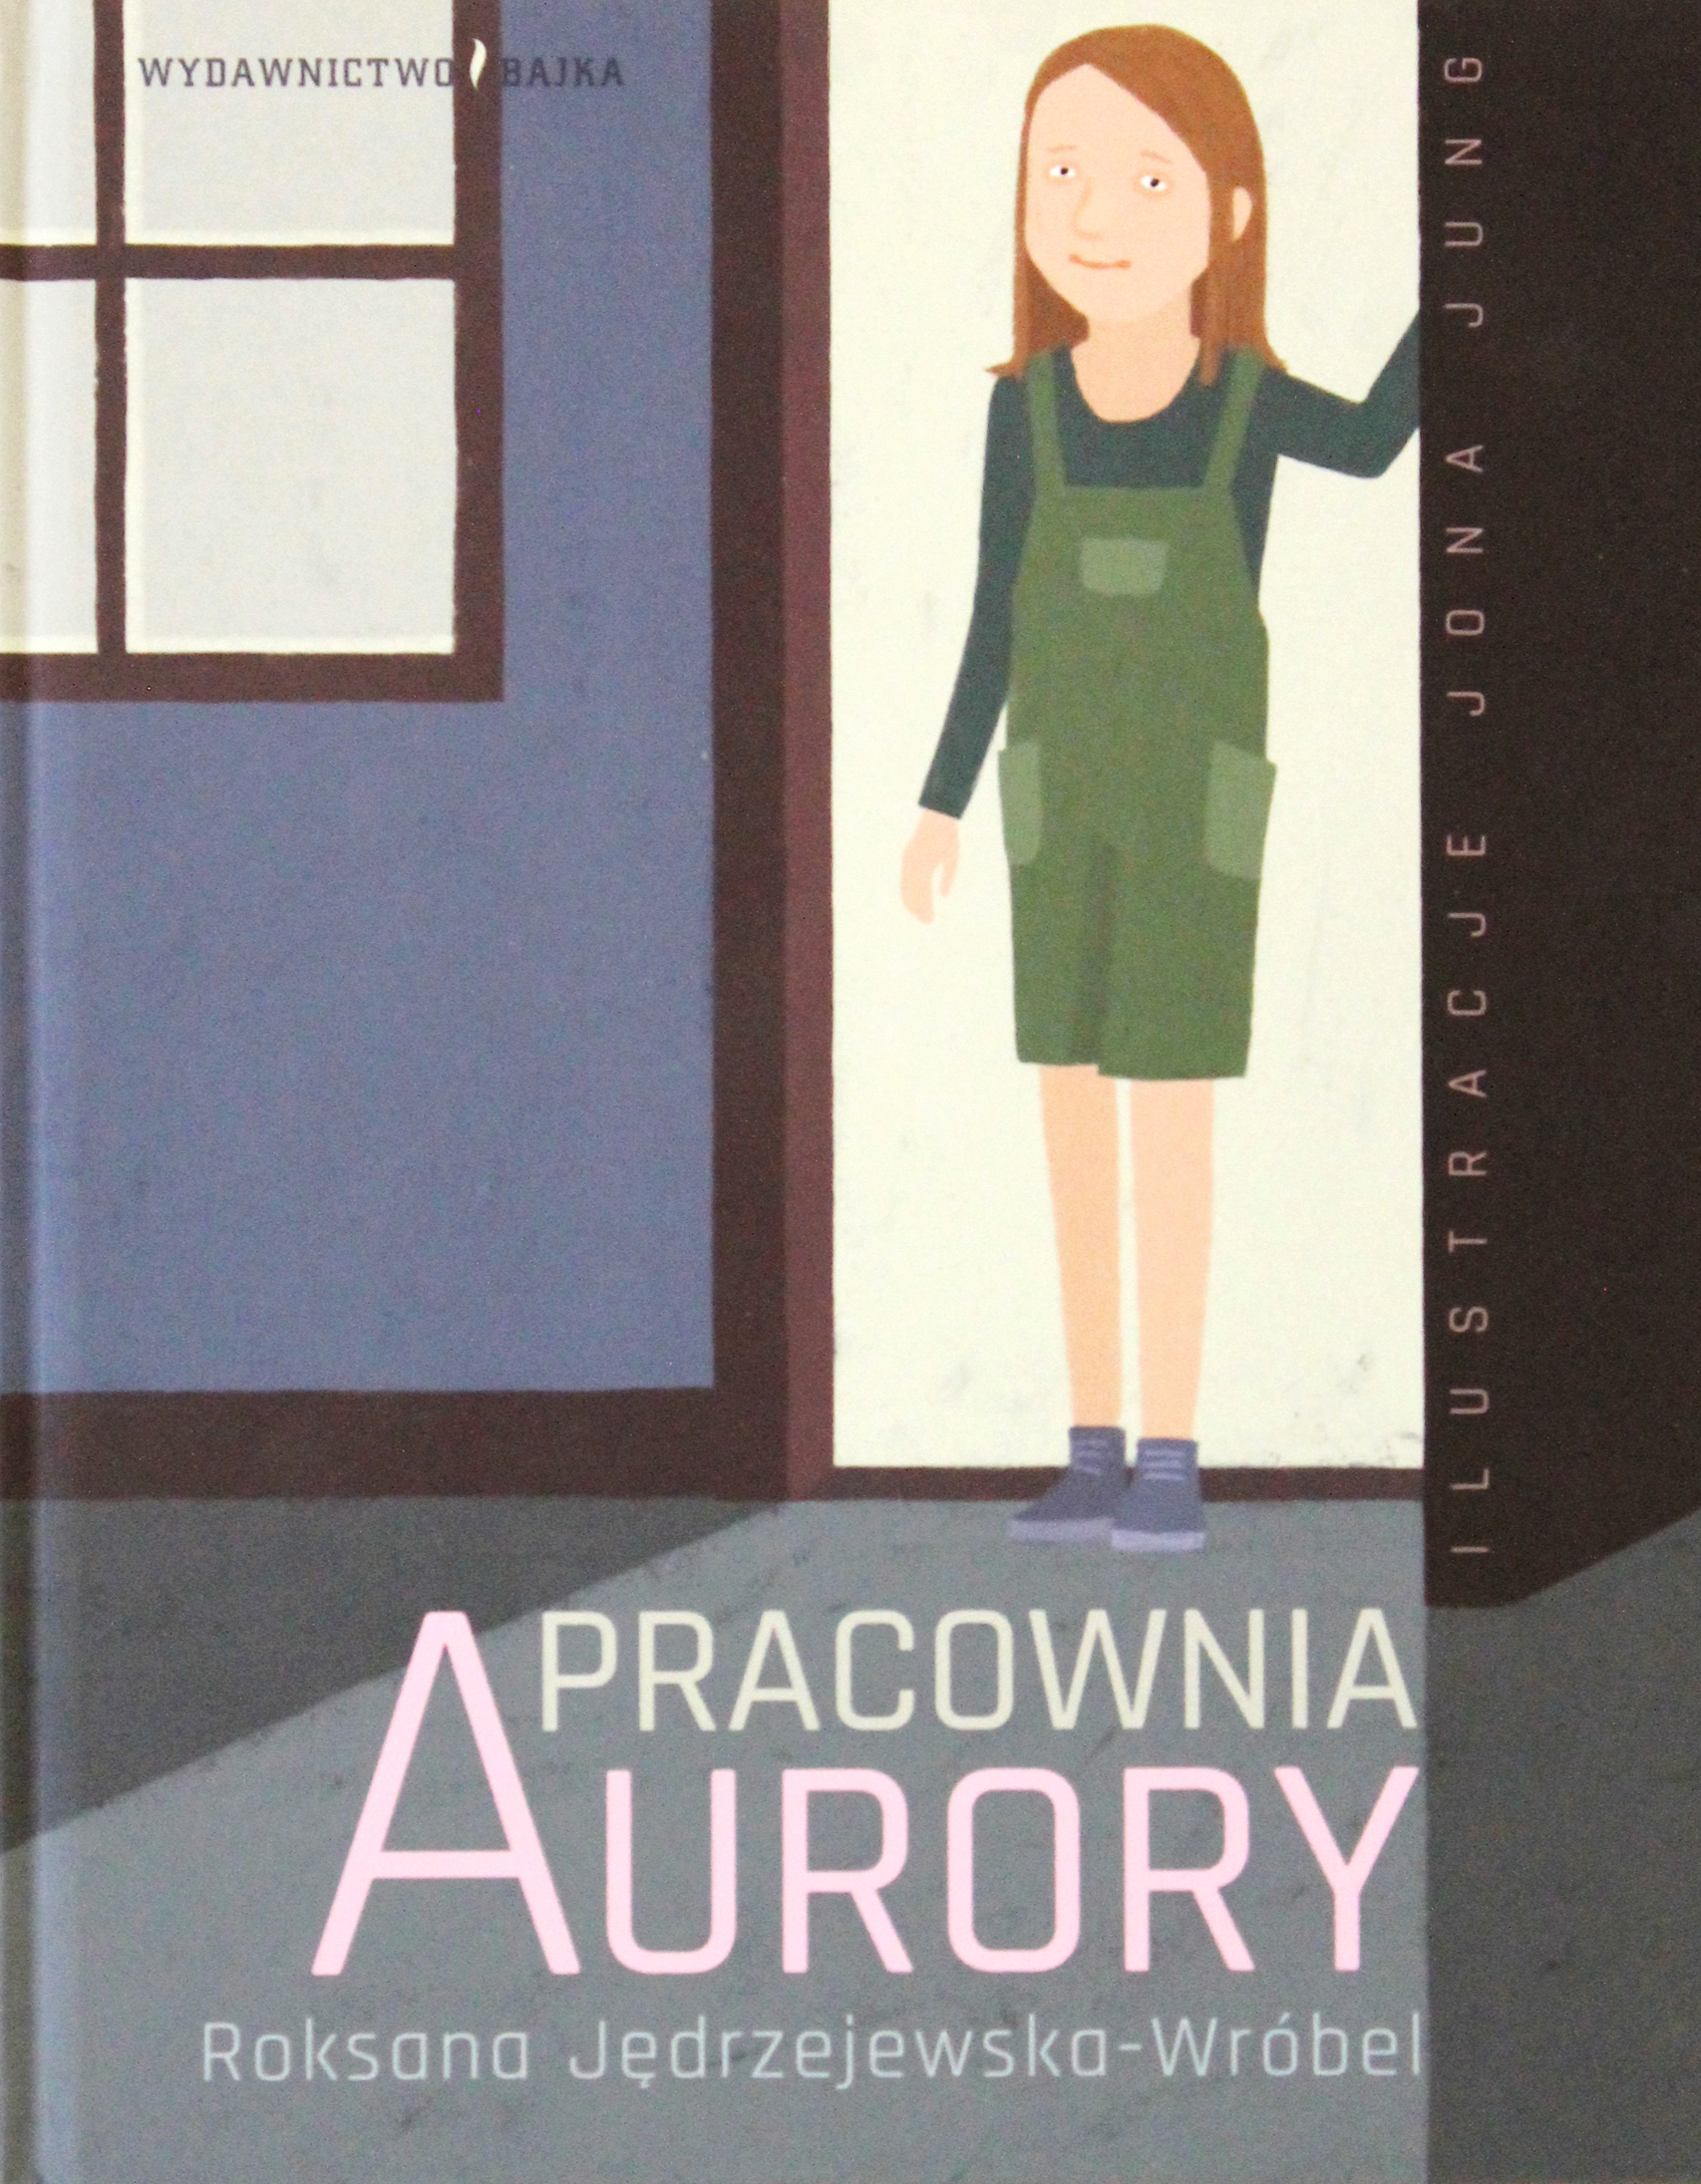 Pracownia Aurory / Autorka: Roksana Jędrzejewska-Wróbel /  Ilustracje: Jona Jung / Wydawnictwo: Bajka